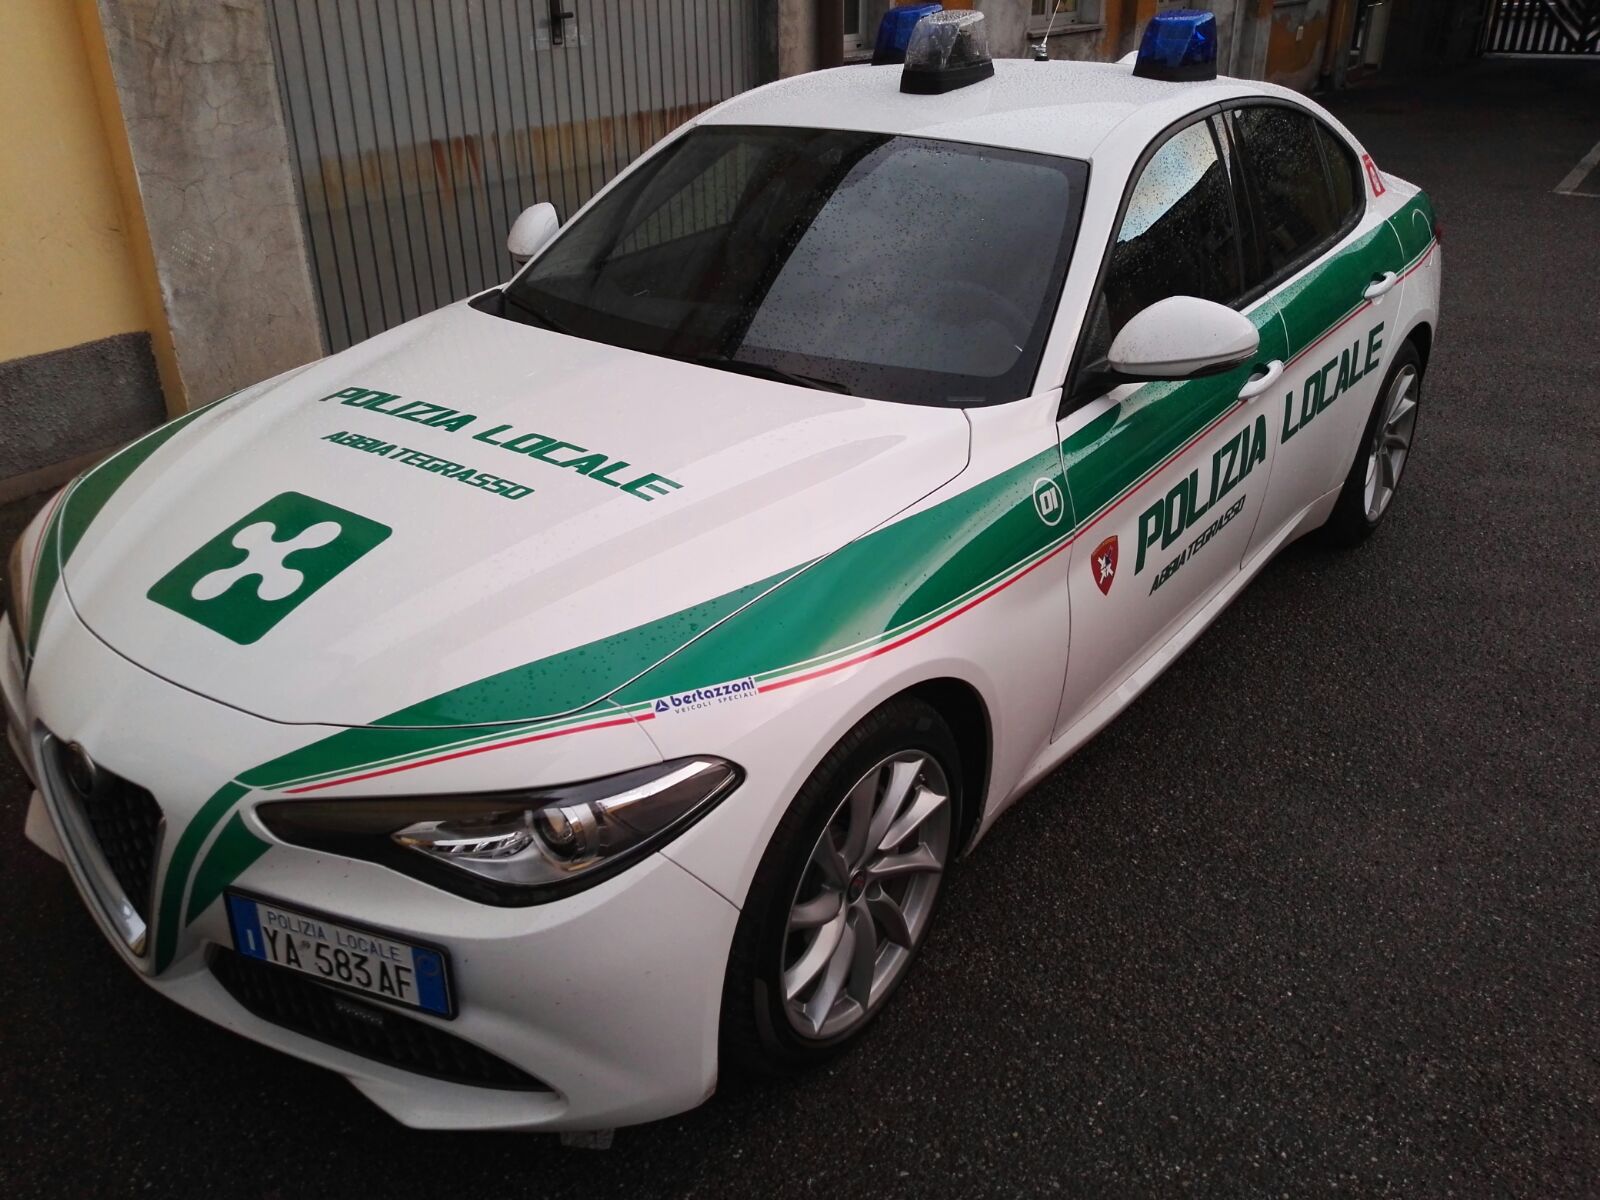 Polizia Locale reparto trasporto organi: Abbiategrasso crea il primo servizio in Italia su Alfa Romeo Giulia | Emergency Live 23